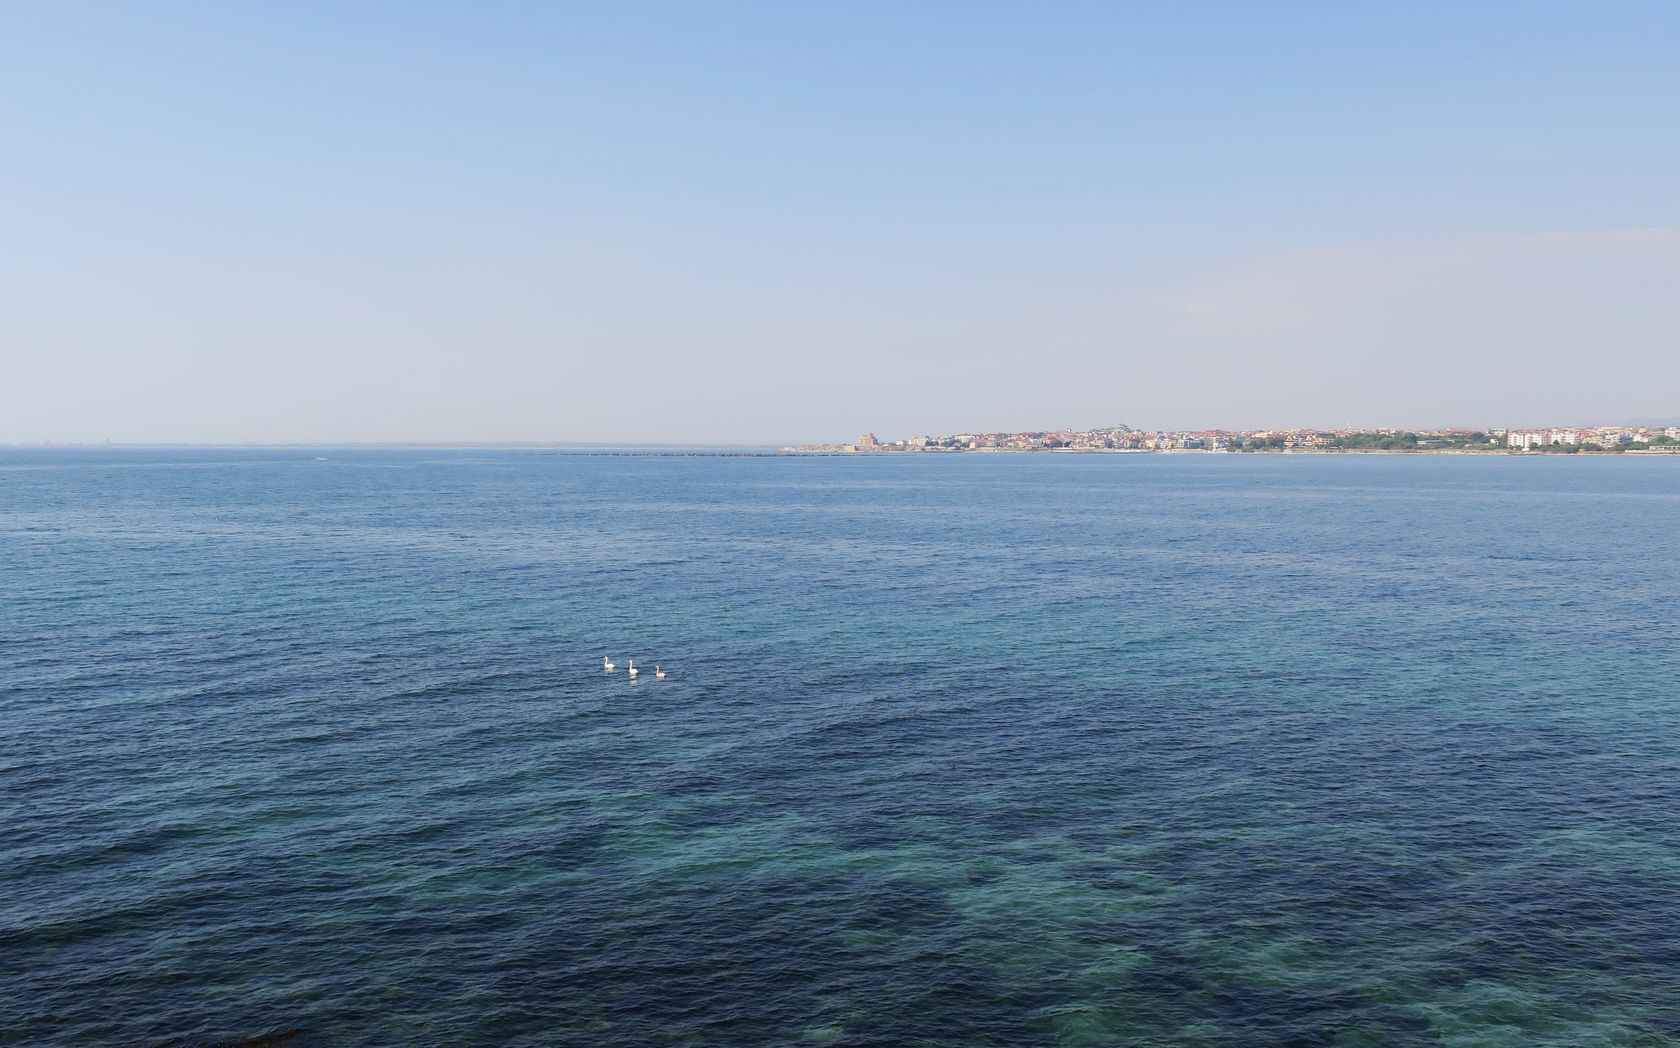 Дюны Несебра, изображение ландшафта.